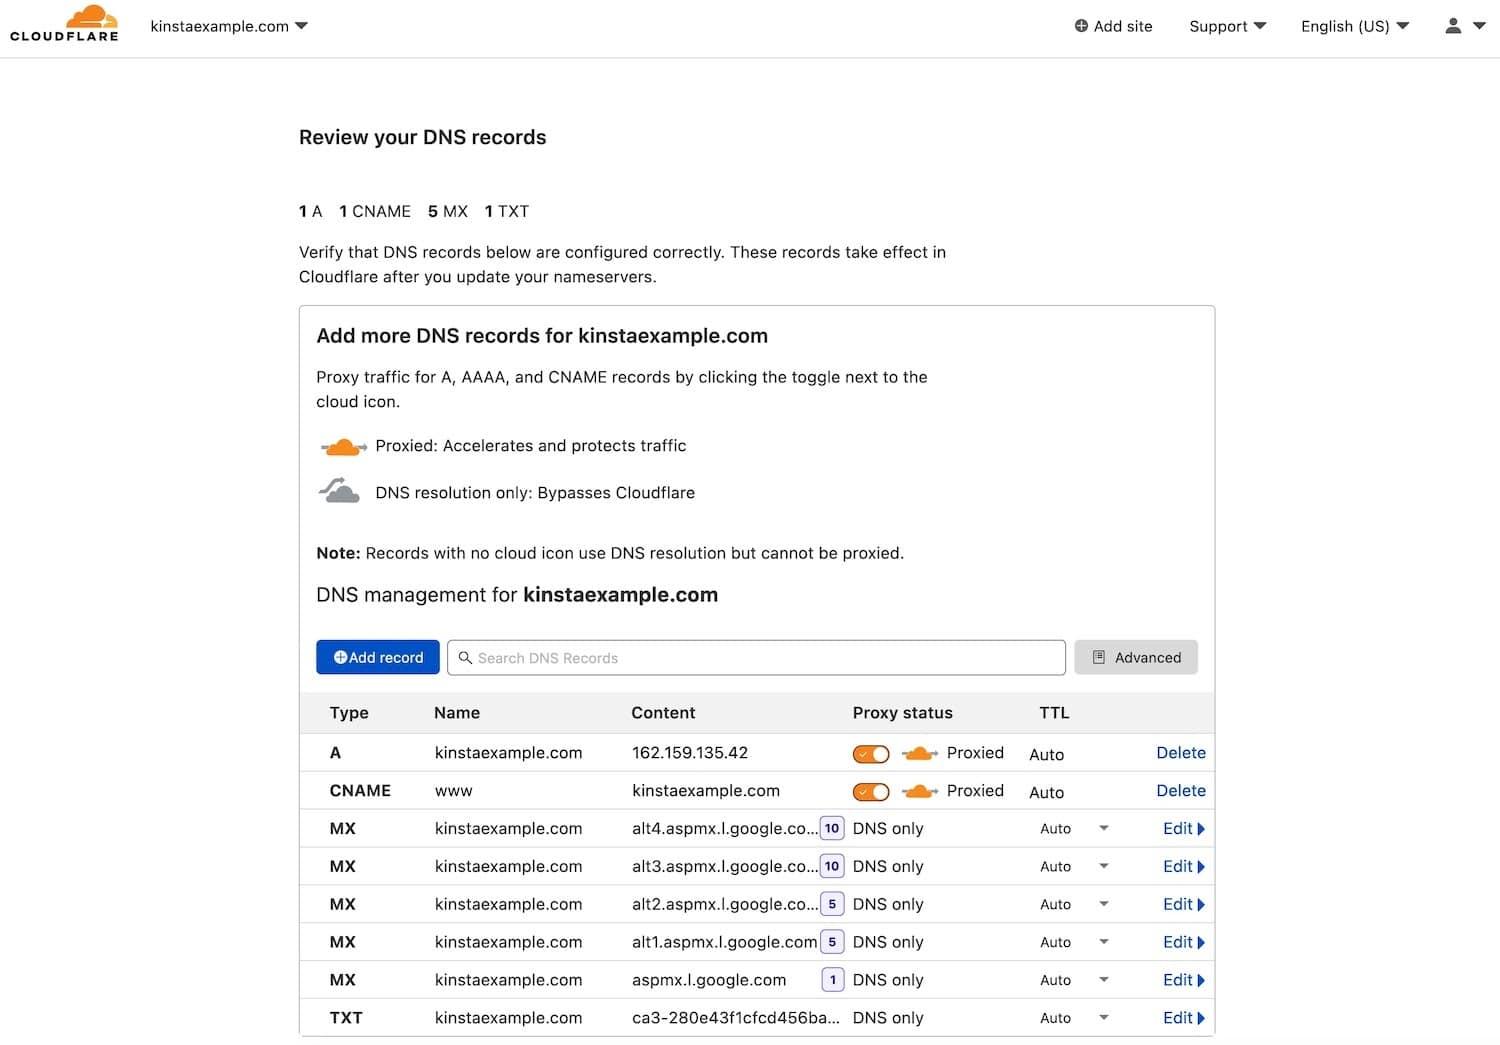 Examen des enregistrements DNS d'un domaine nouvellement ajouté dans Cloudflare.